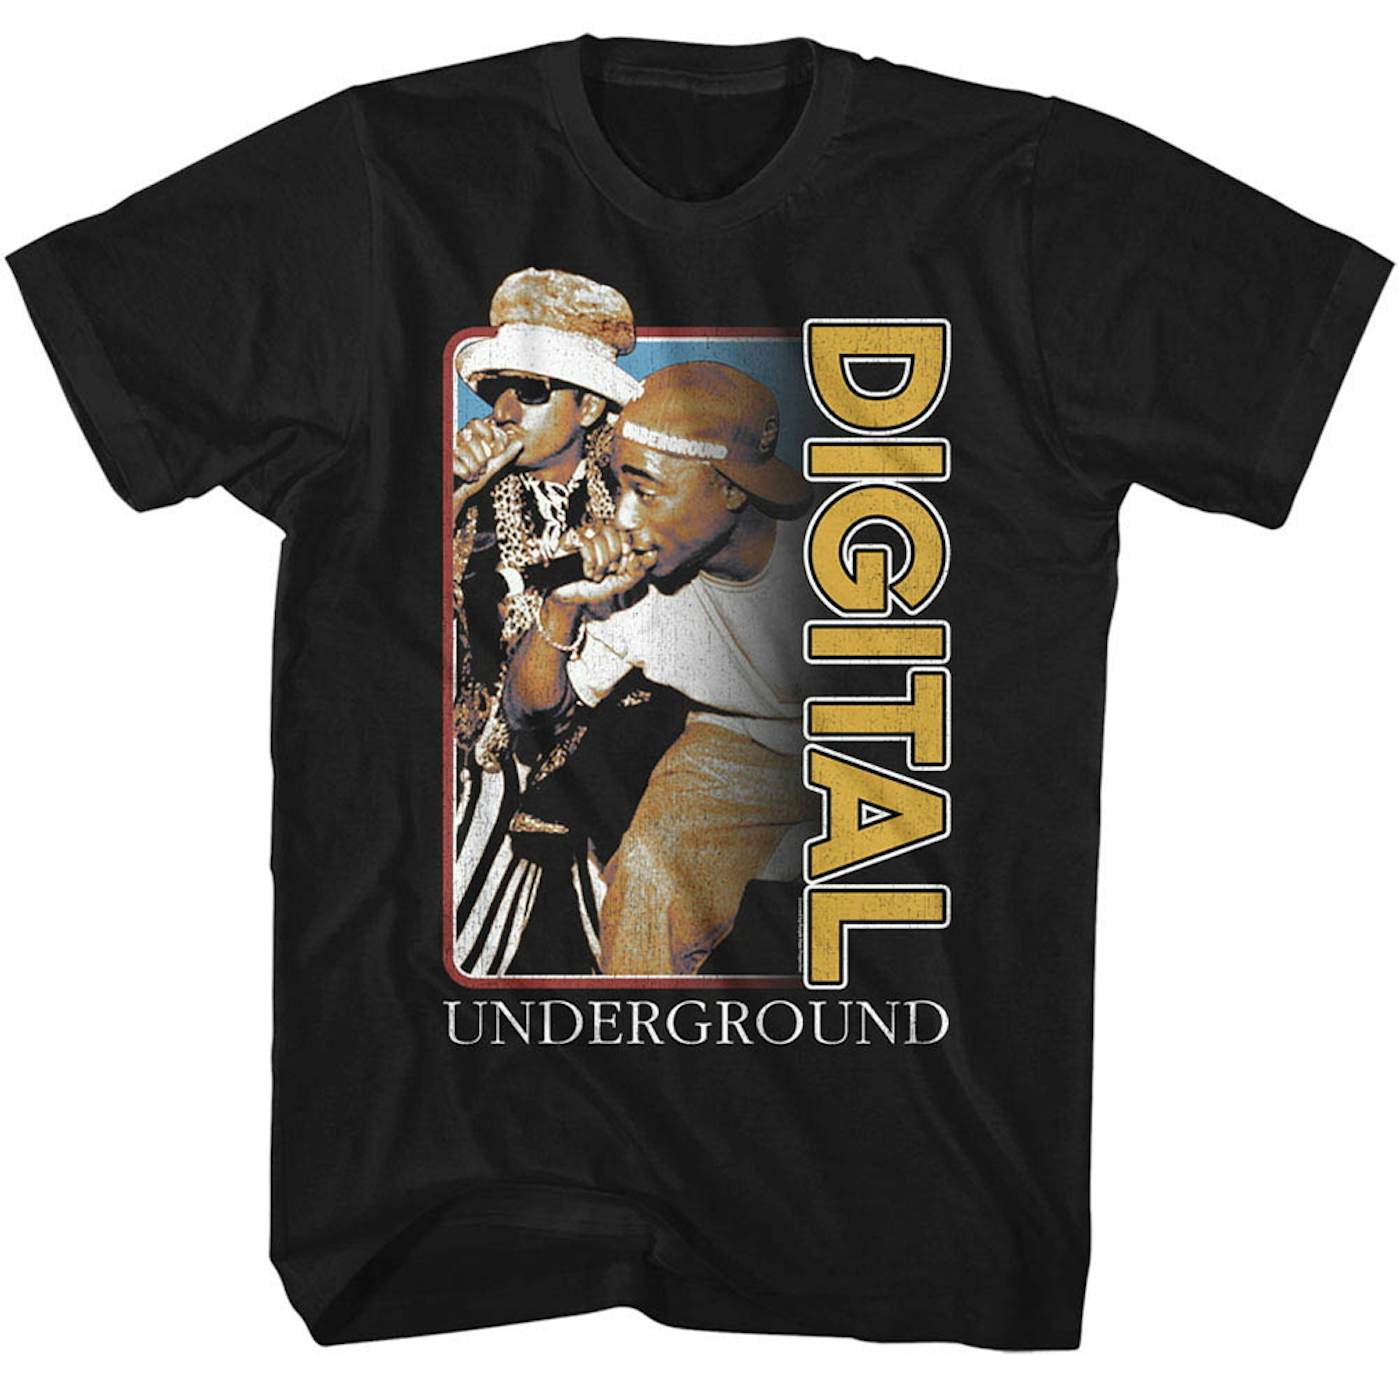 Digital Underground T Shirt | Digital Underground Photo T-Shirt